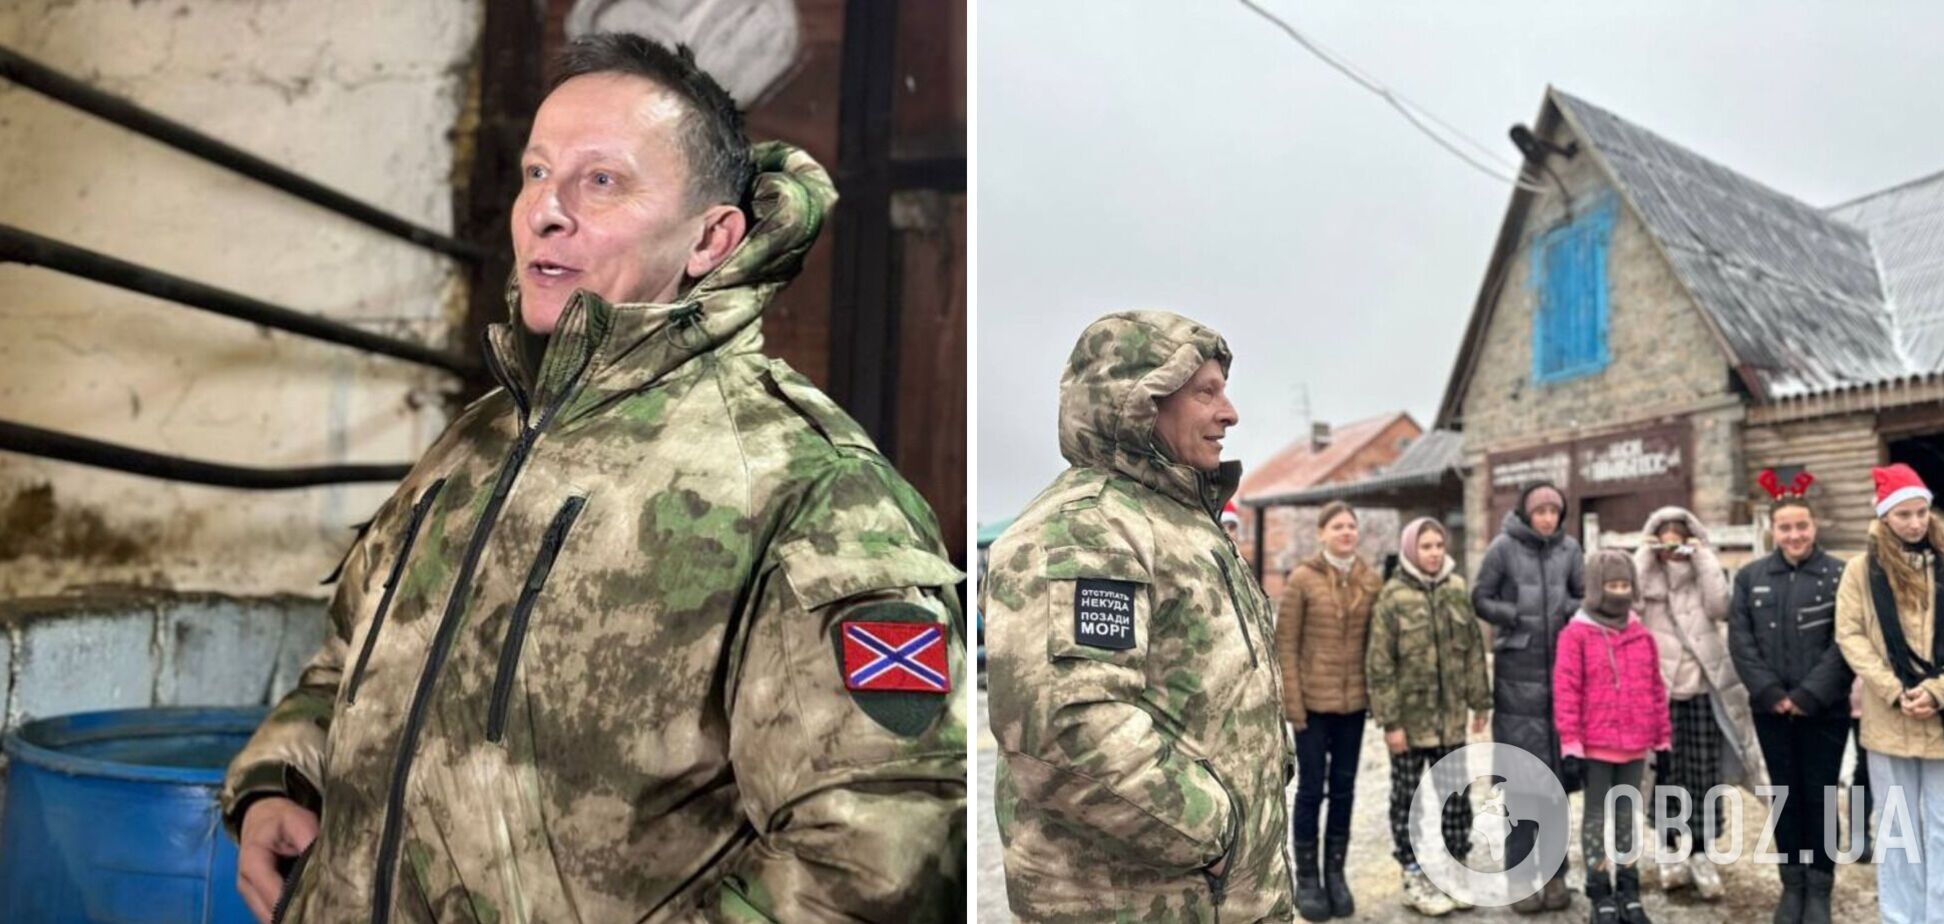 'Відступати нема куди, позаду морг': путініст Охлобистін засвітився на окупованому Донбасі. Фото